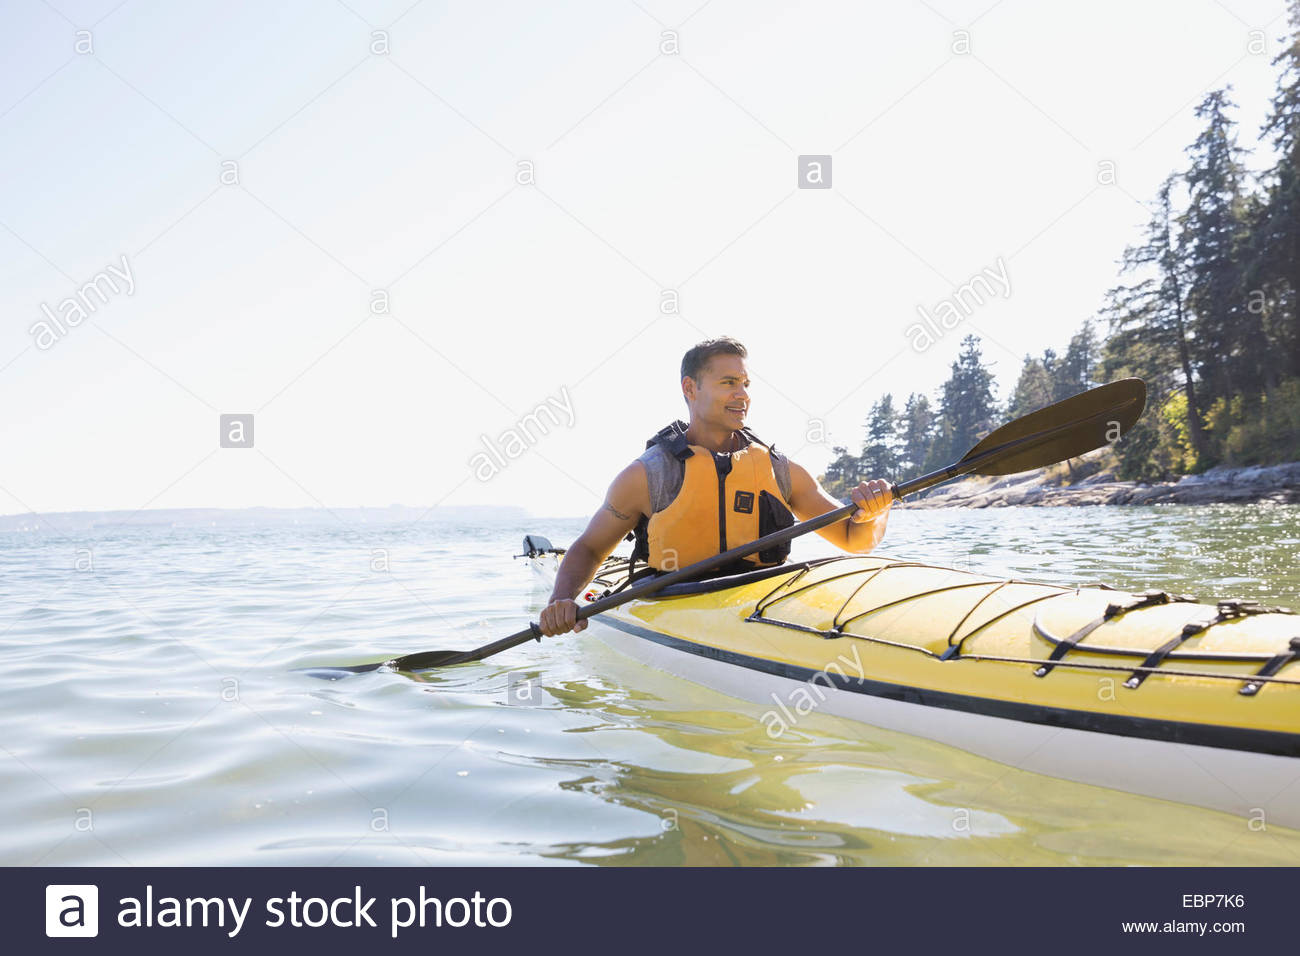 Man kayaking on sunny ocean Stock Photo